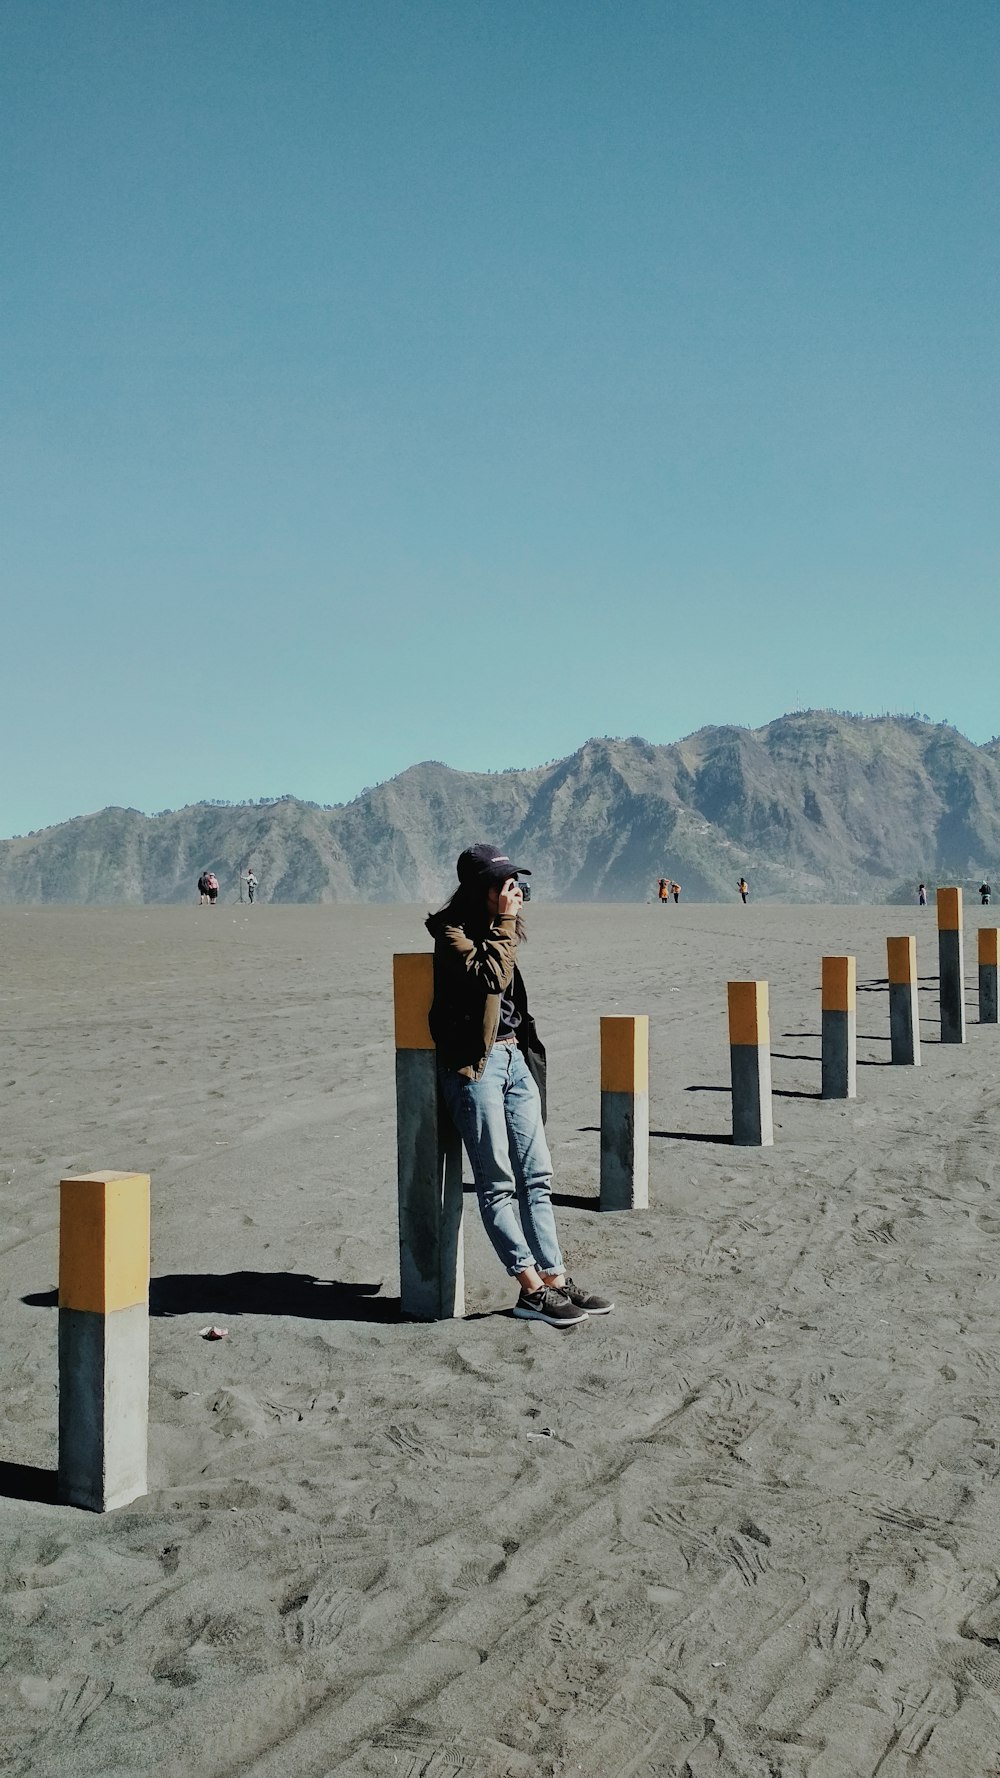 une personne appuyée contre un poteau au milieu d’un désert